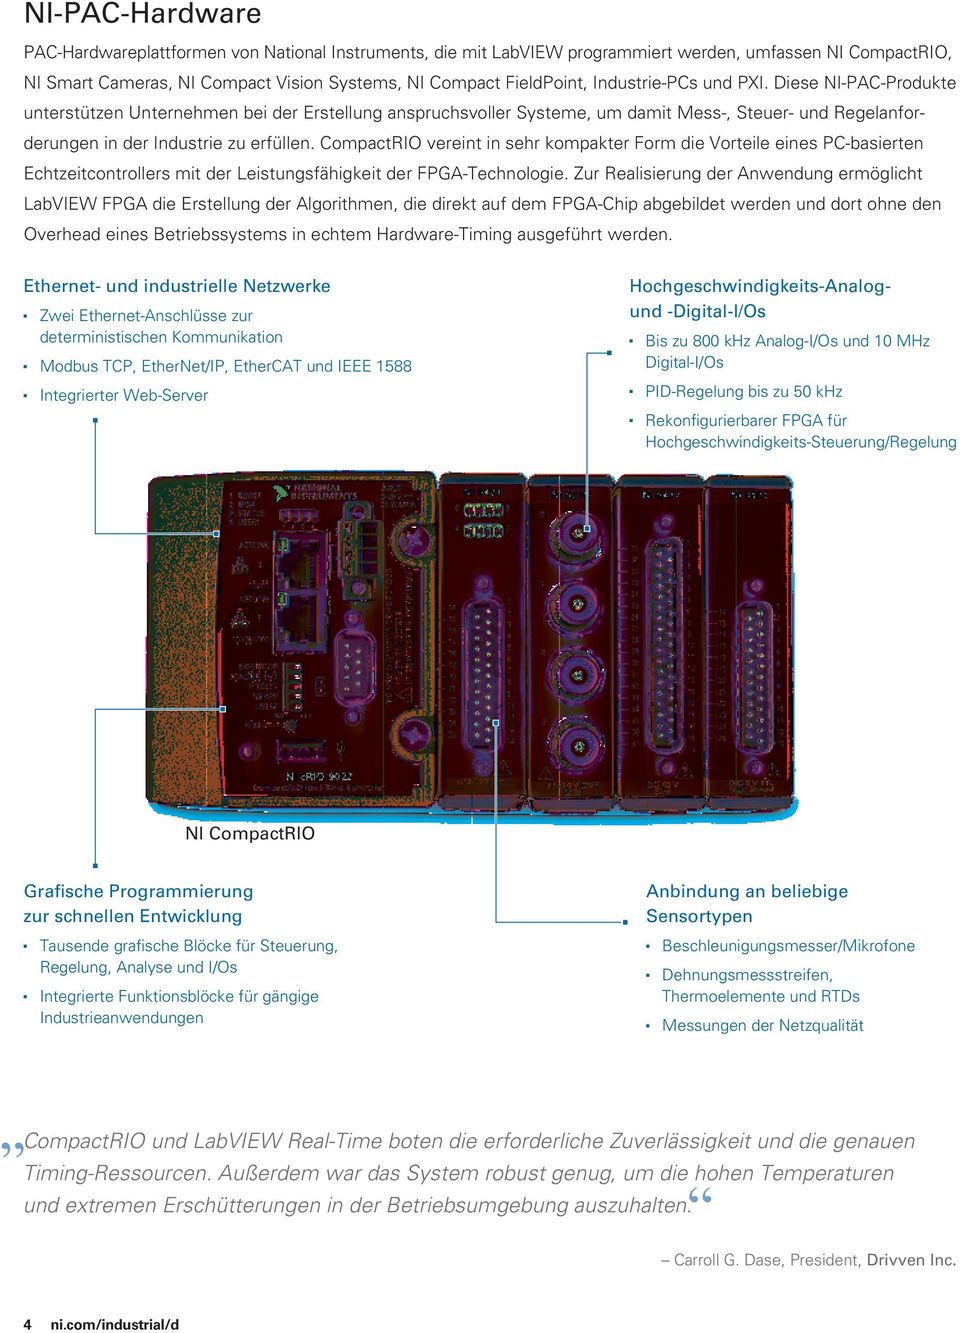 CompactRIO vereint in sehr kompakter Form die Vorteile eines PC-basierten Echtzeitcontrollers mit der Leistungsfähigkeit der FPGA-Technologie.